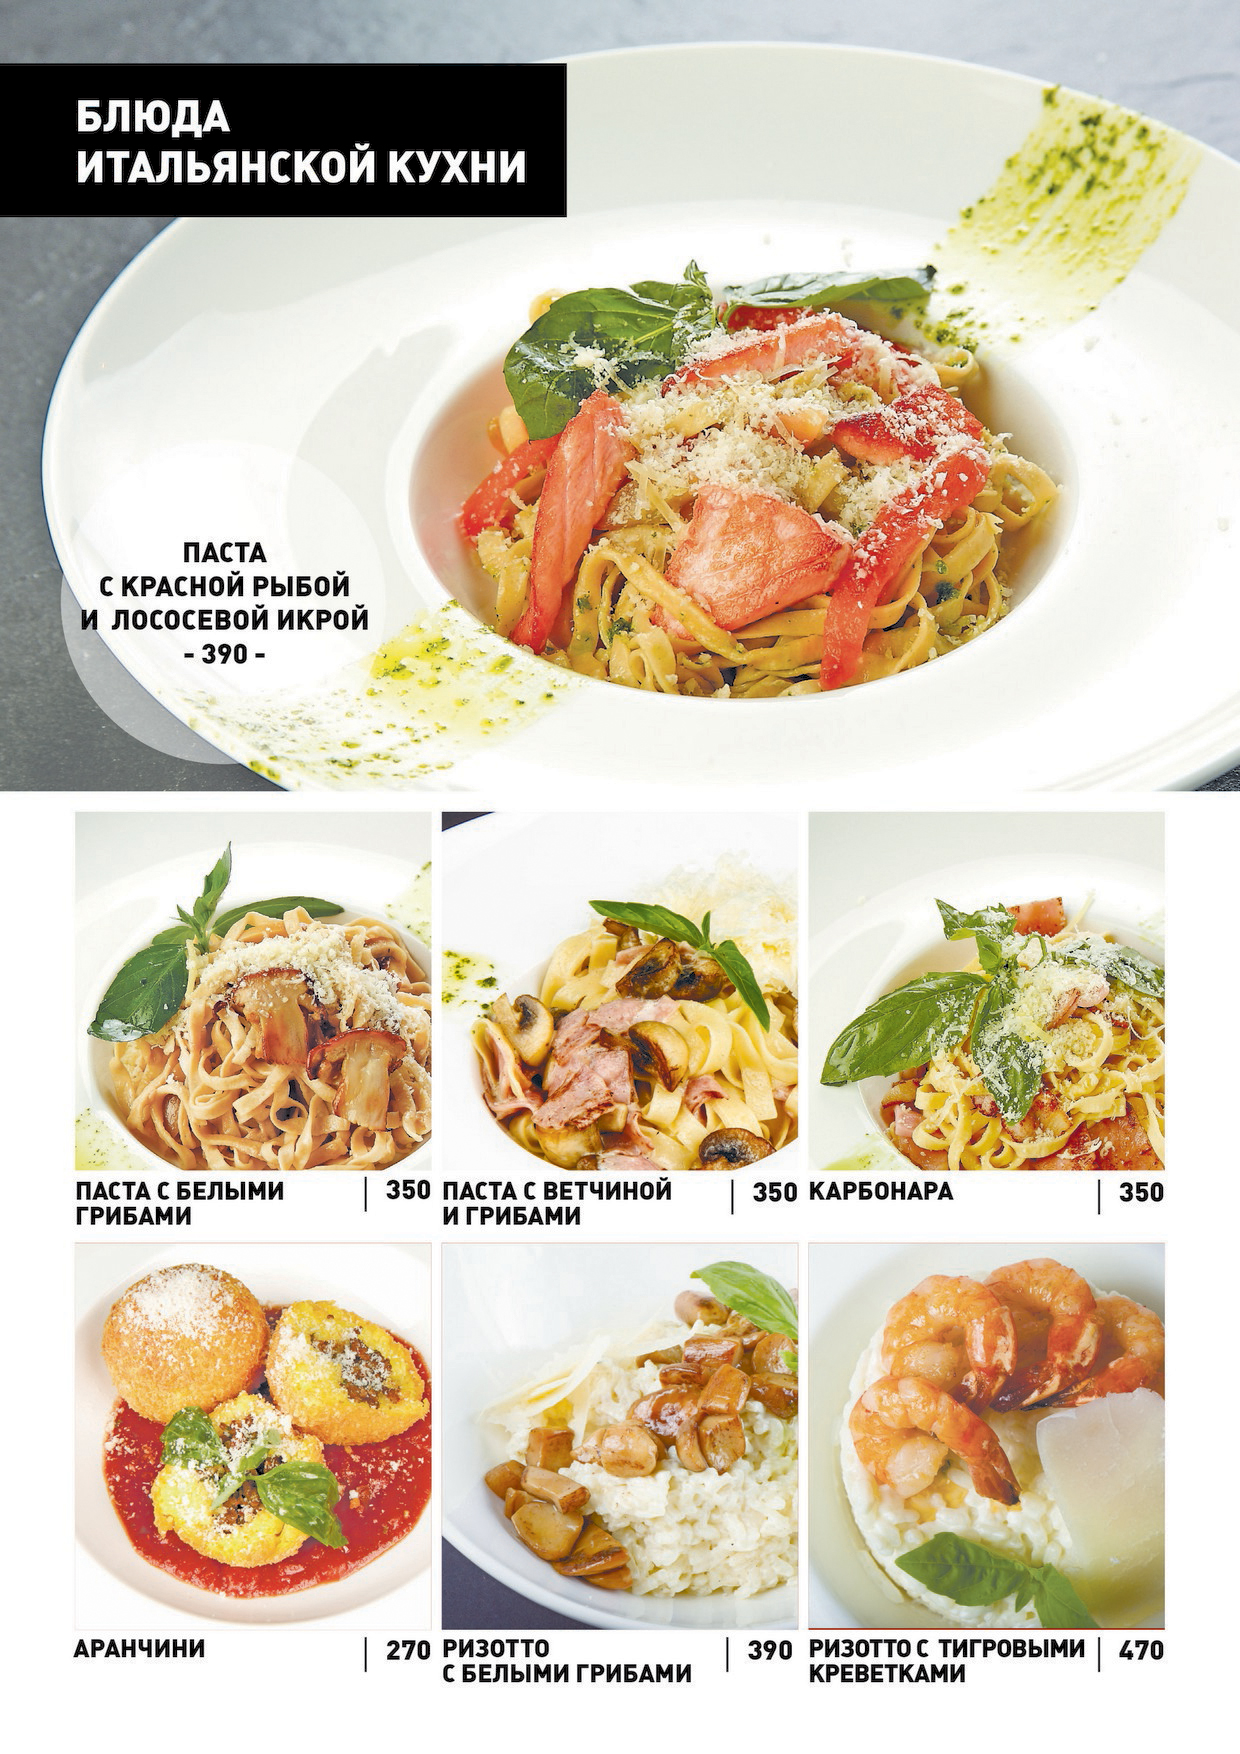 меню итальянской кухни в ресторане